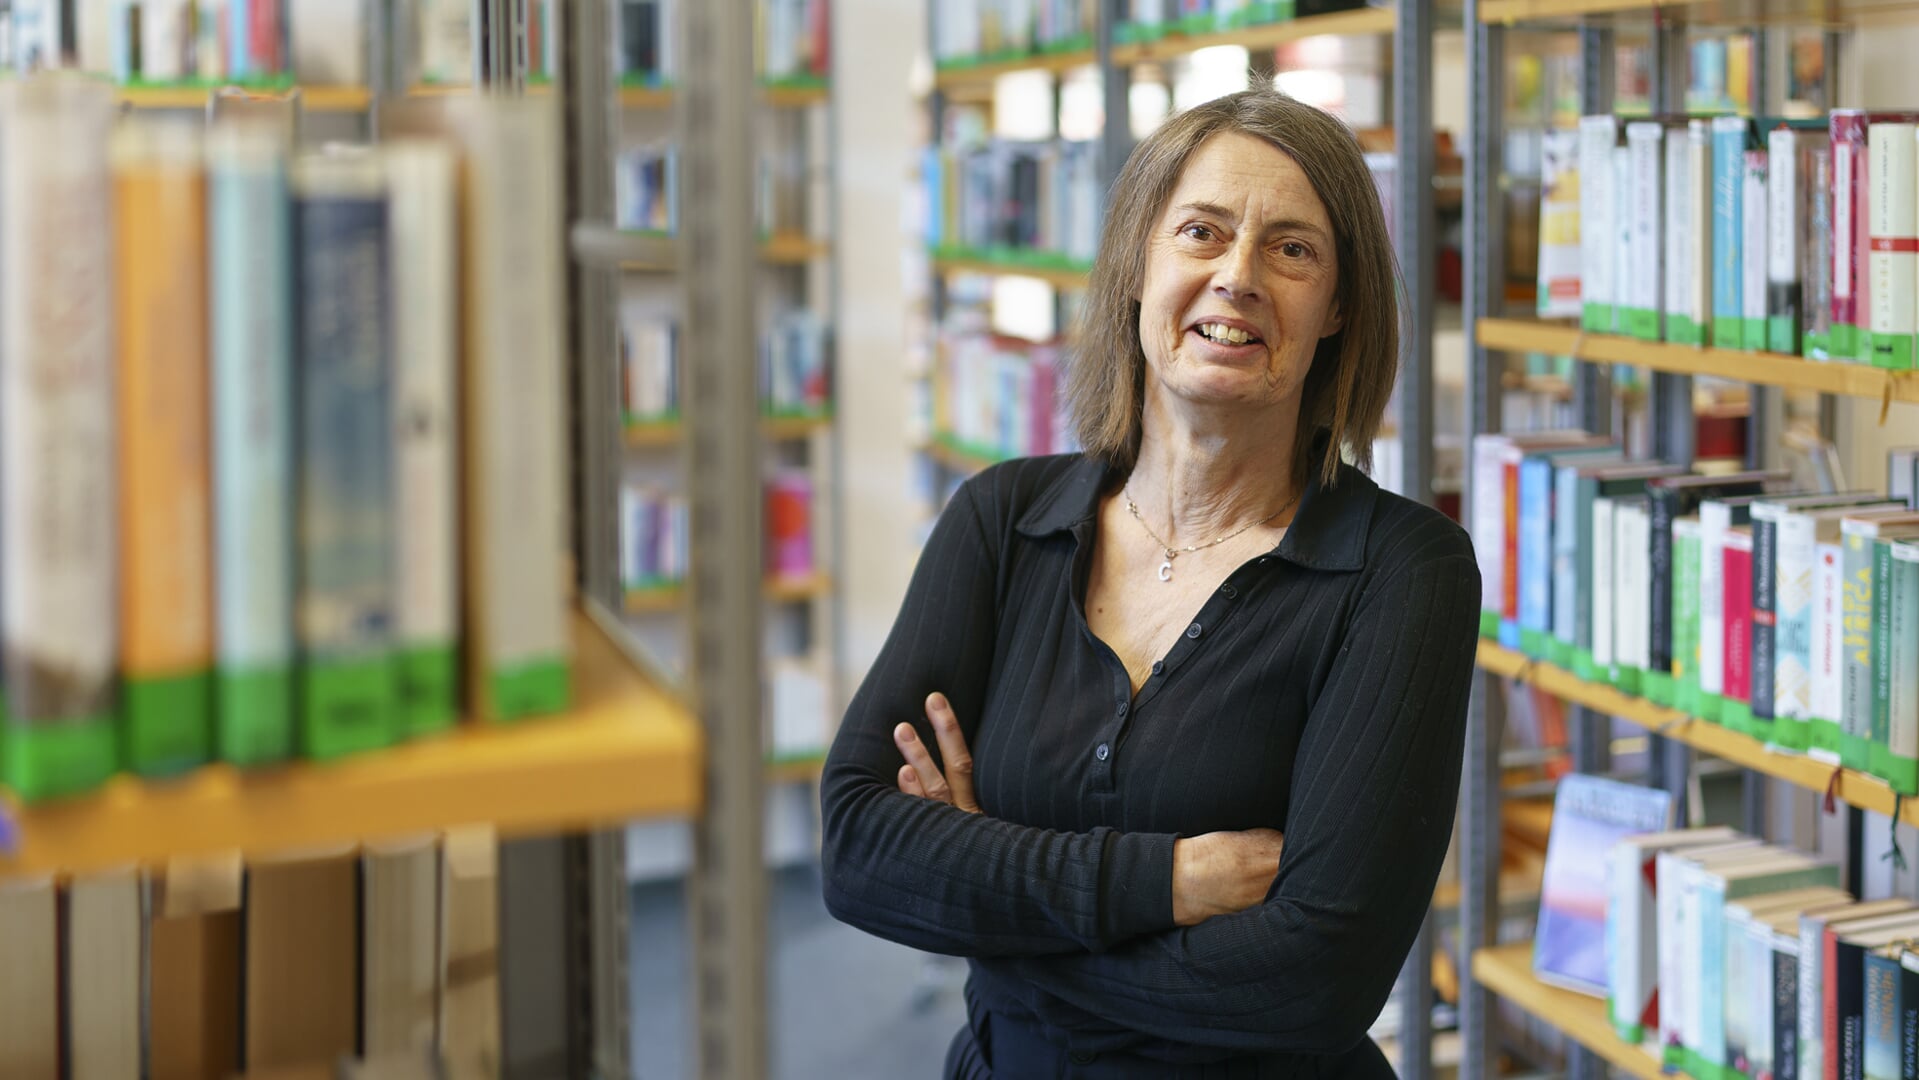 Claudia Bartosch har været bibliotekschef i Lyksborg siden 31. januar 2017. Biblioteket ligger i stueetagen i den fredede tidligere banegårdsbygning. Foto: